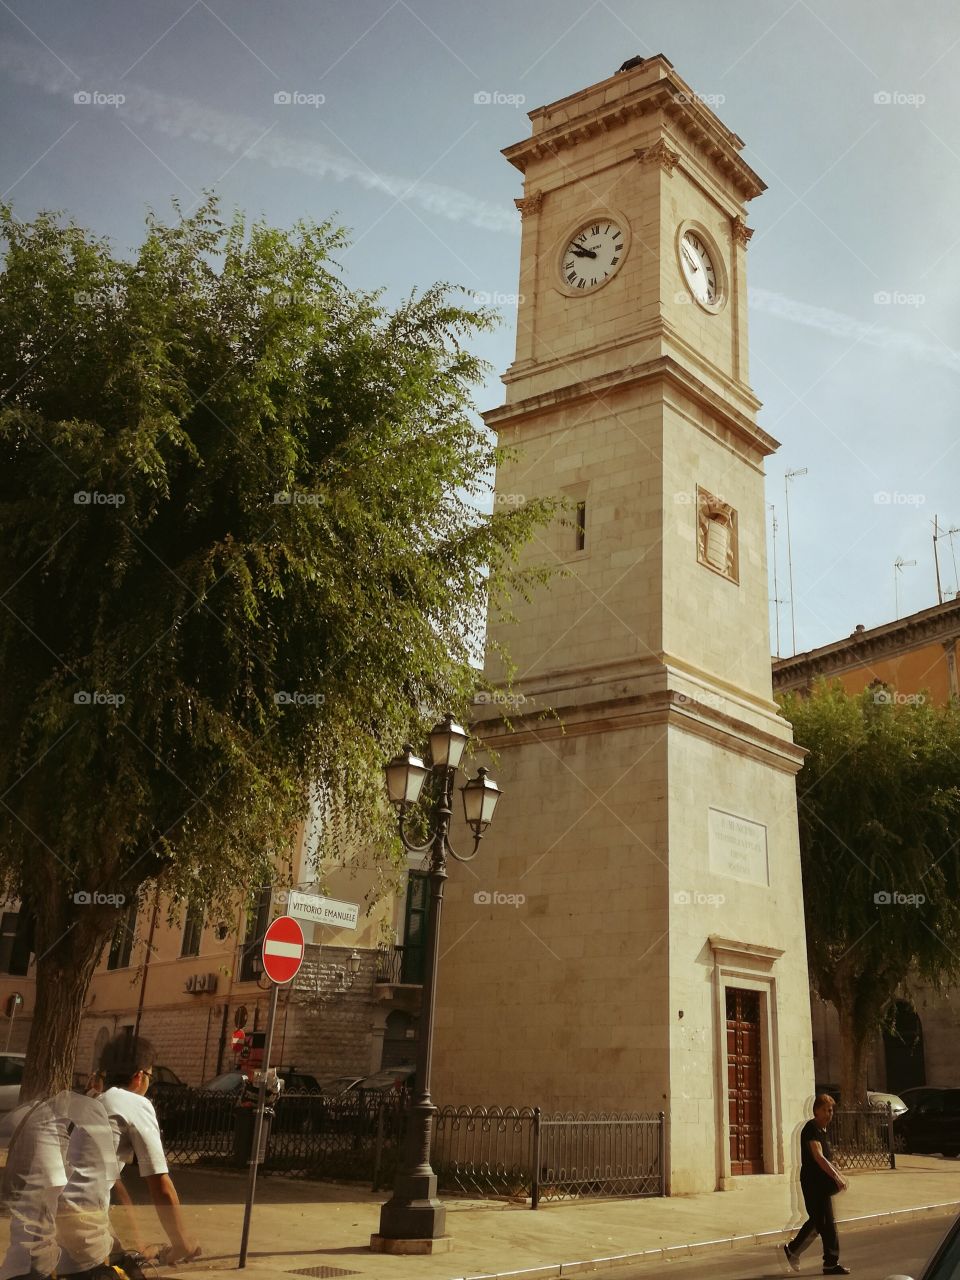 San Giacomo tower